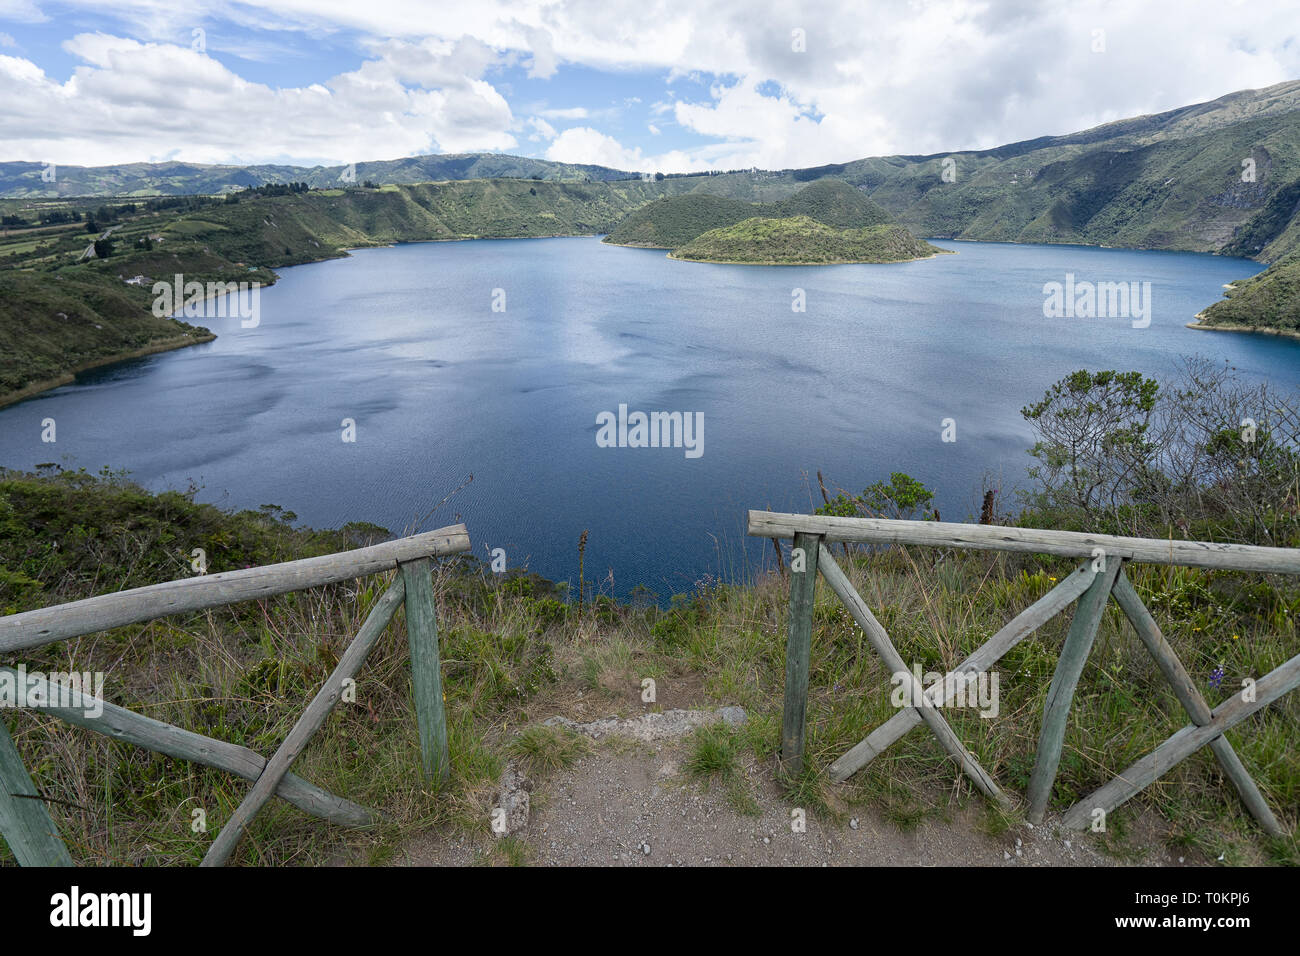 Lake Cuicocha in Ecuador Stock Photo